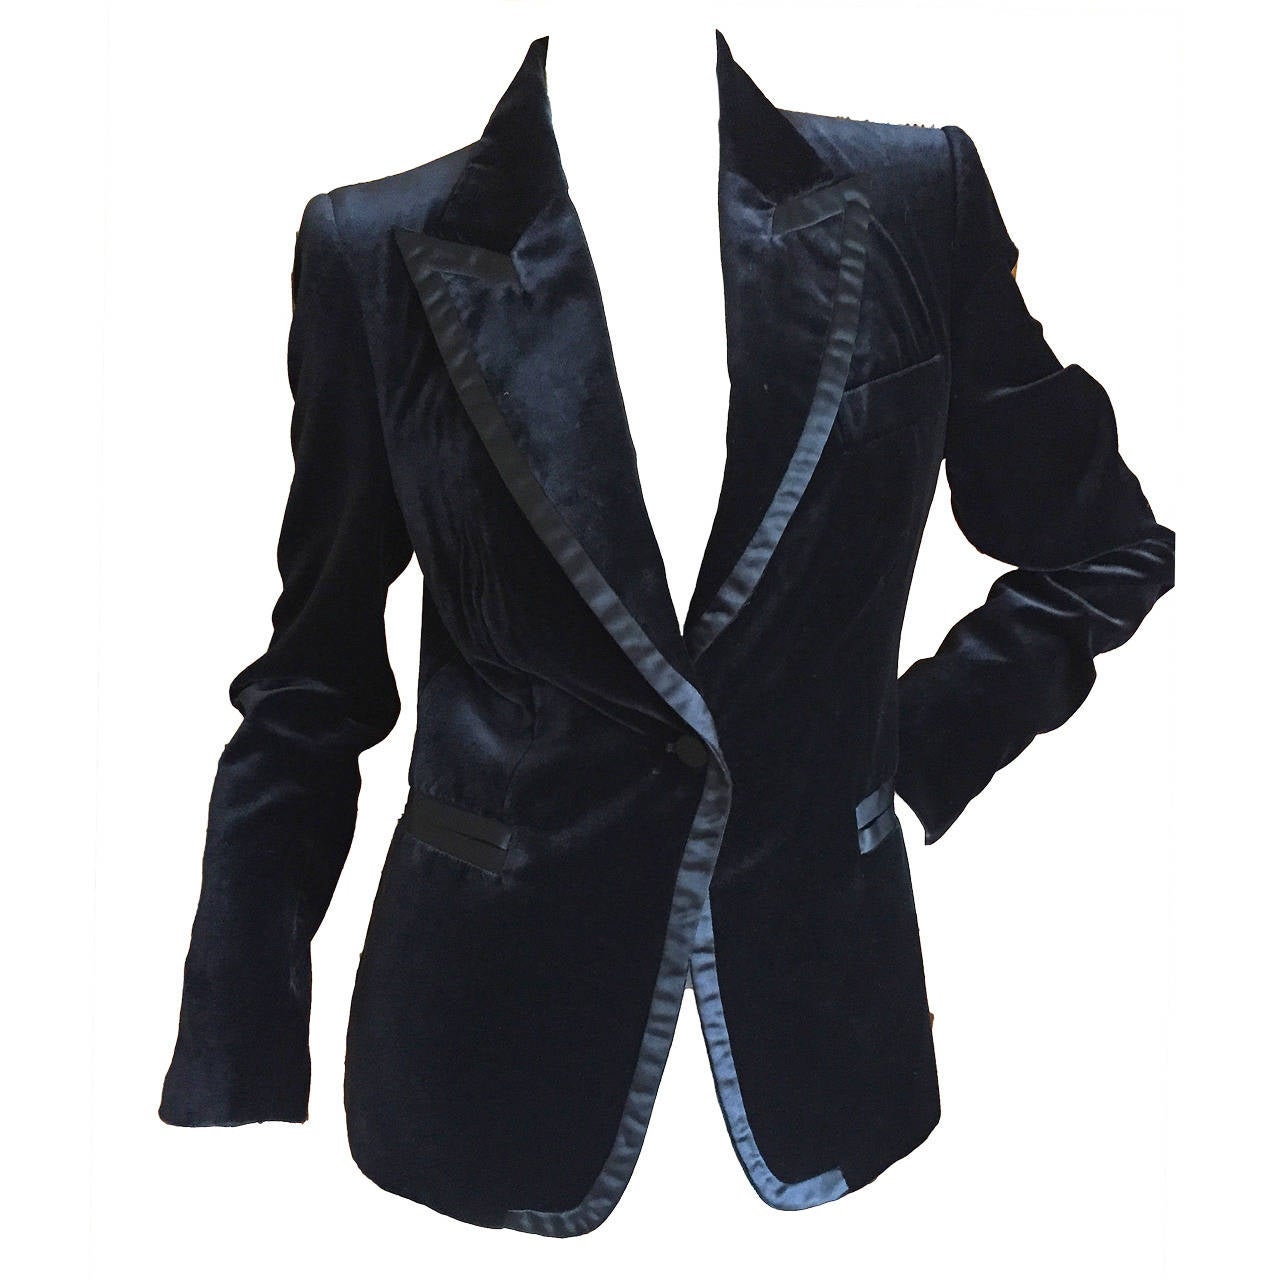 Gucci by Tom Ford 1996 Black Velvet Tuxedo Jacket at 1stdibs